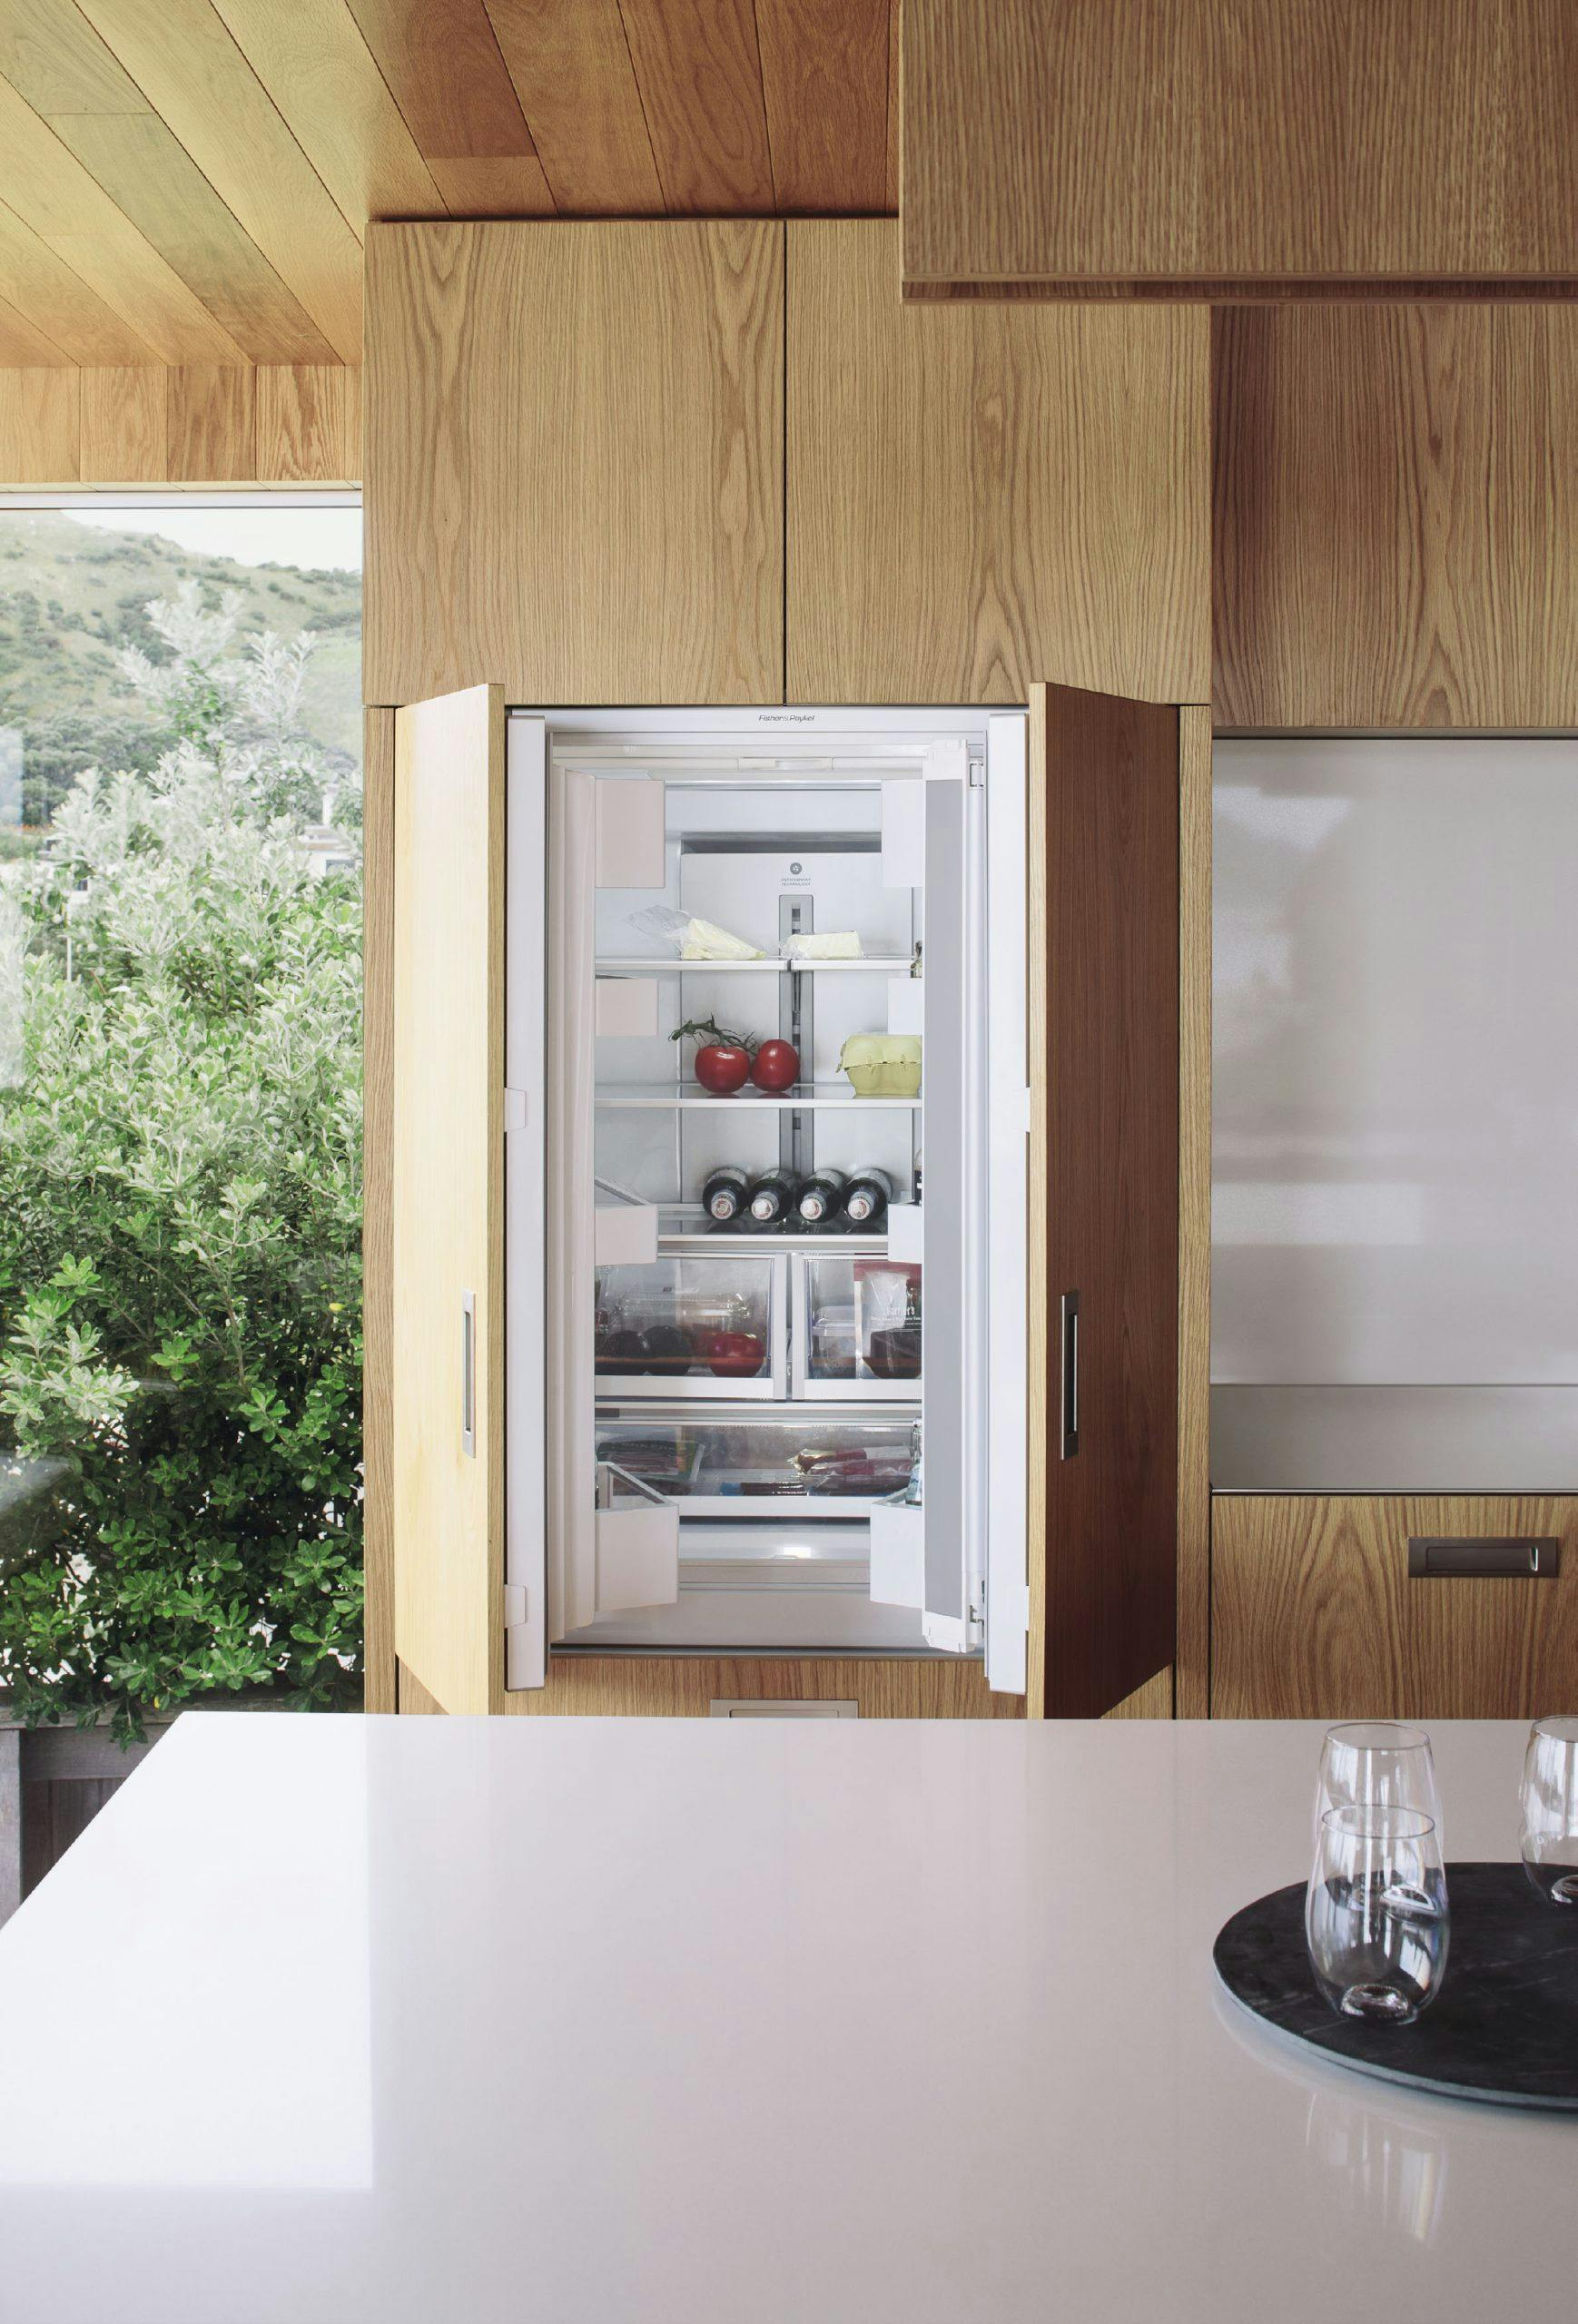 a fridge-freezer